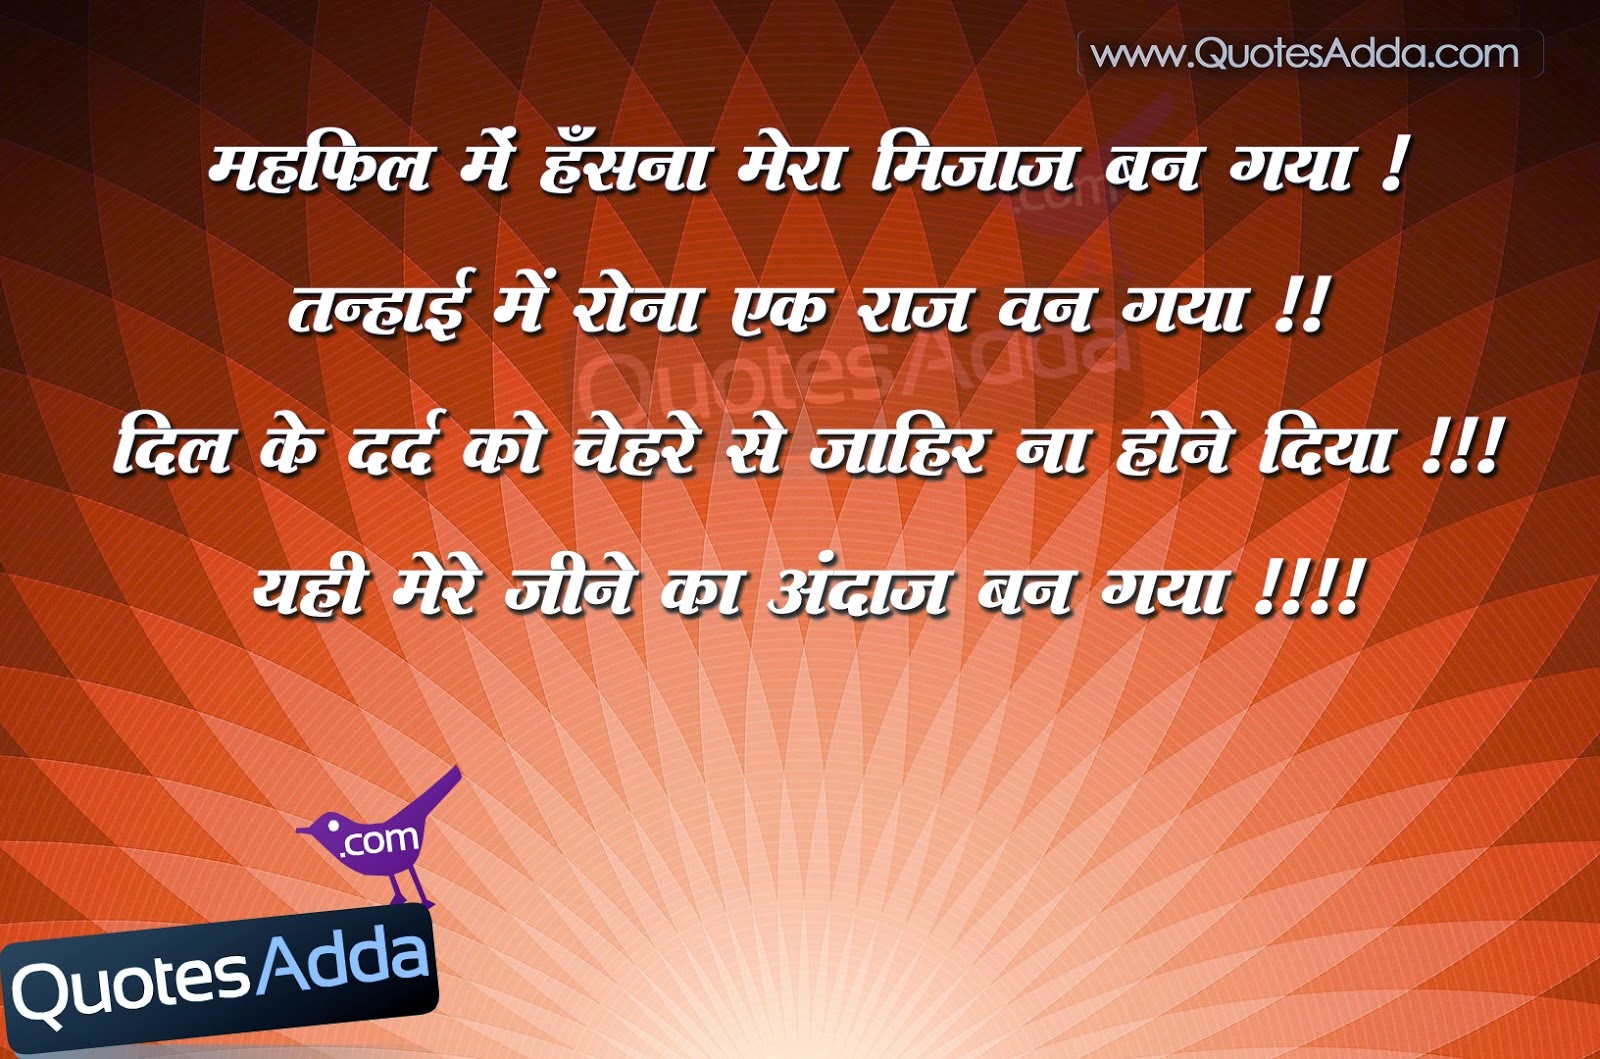 Hindi Shayari In Hindi Language Hindi Shayari Dosti In English Love Romantic Image SMS s Impages Pics Wallpapers